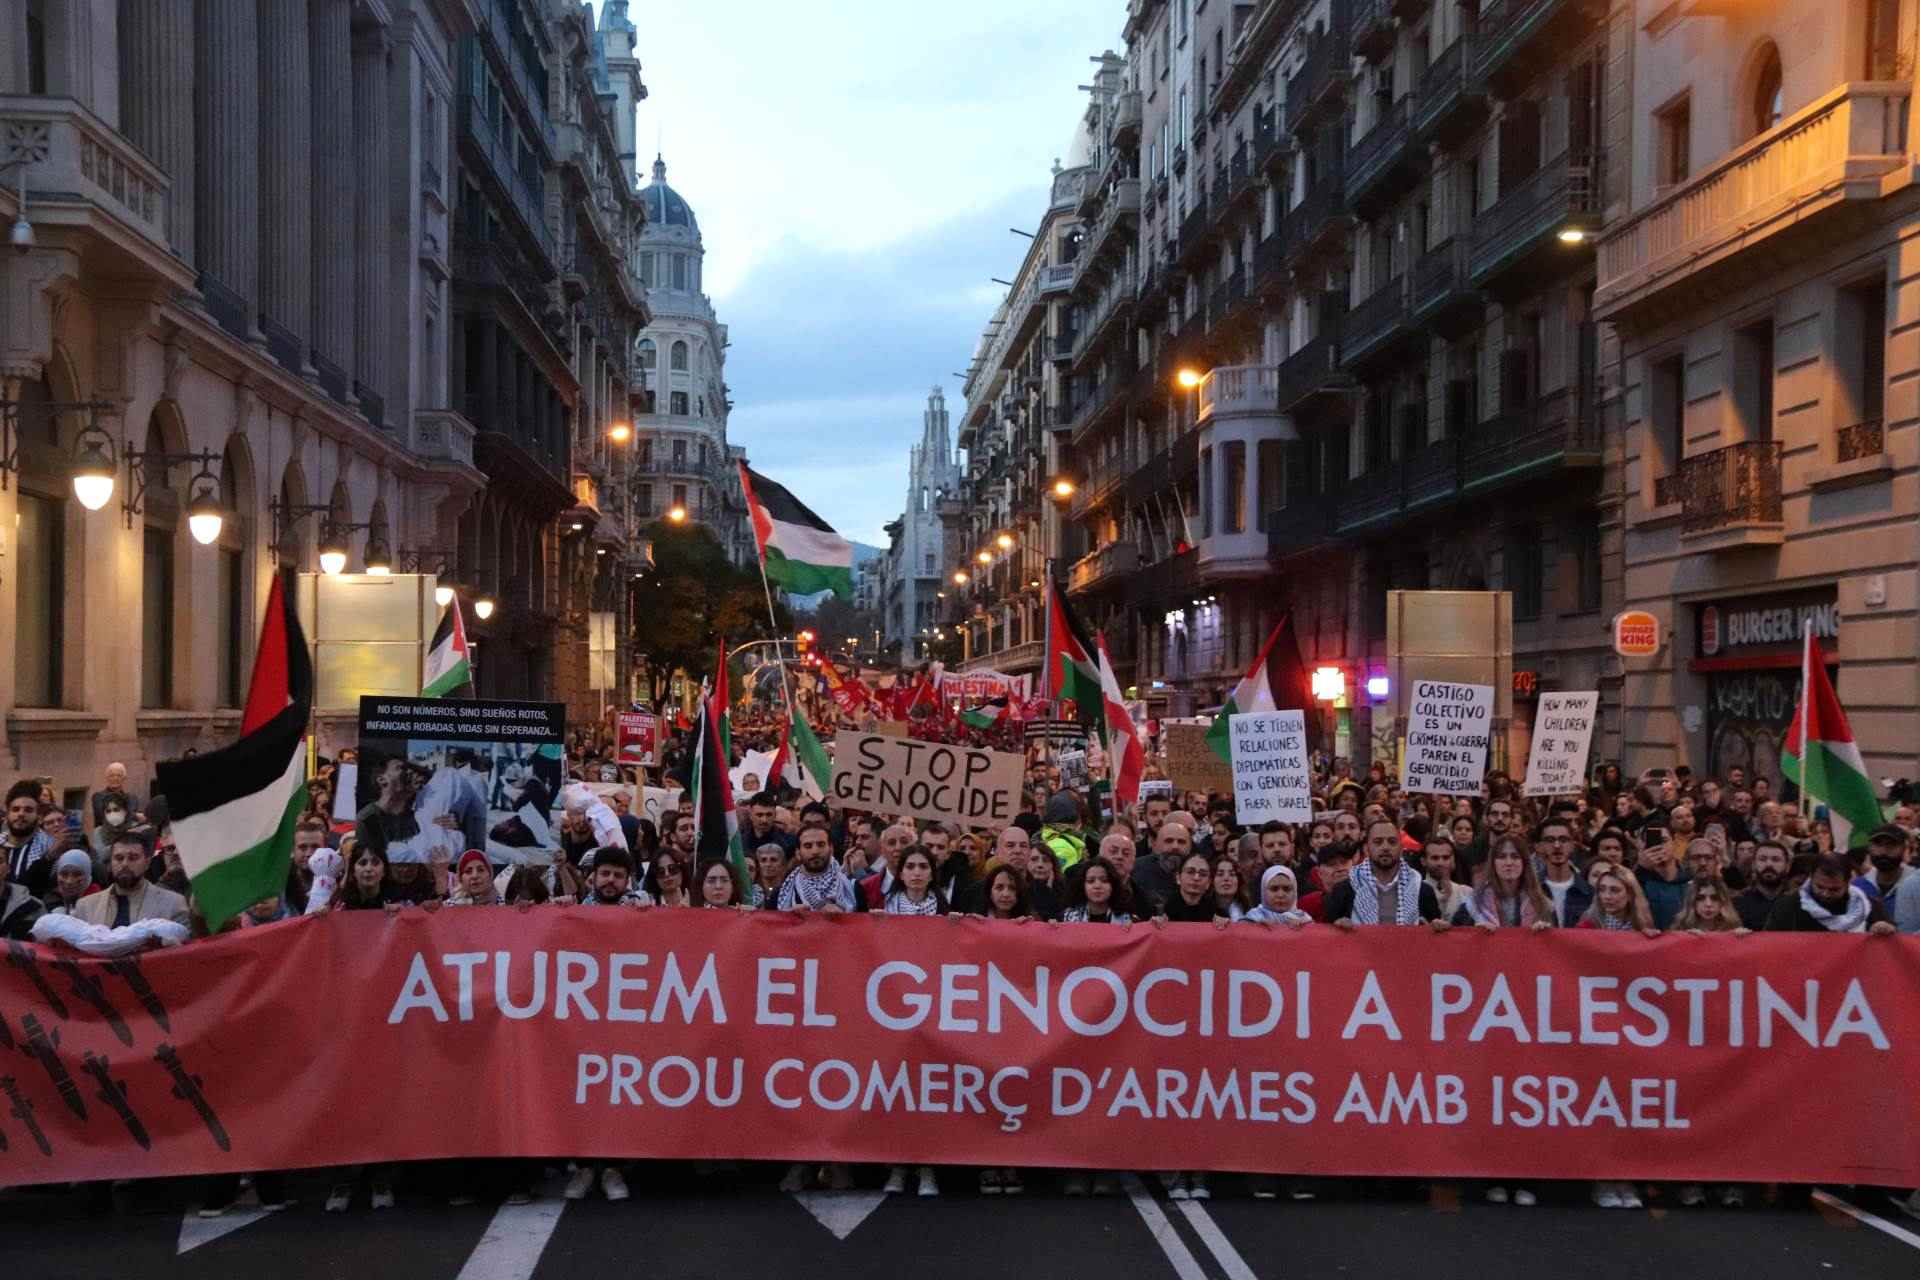 Nueva manifestación en Barcelona para exigir un alto el fuego en Gaza: "Israel asesina, Europa patrocina"